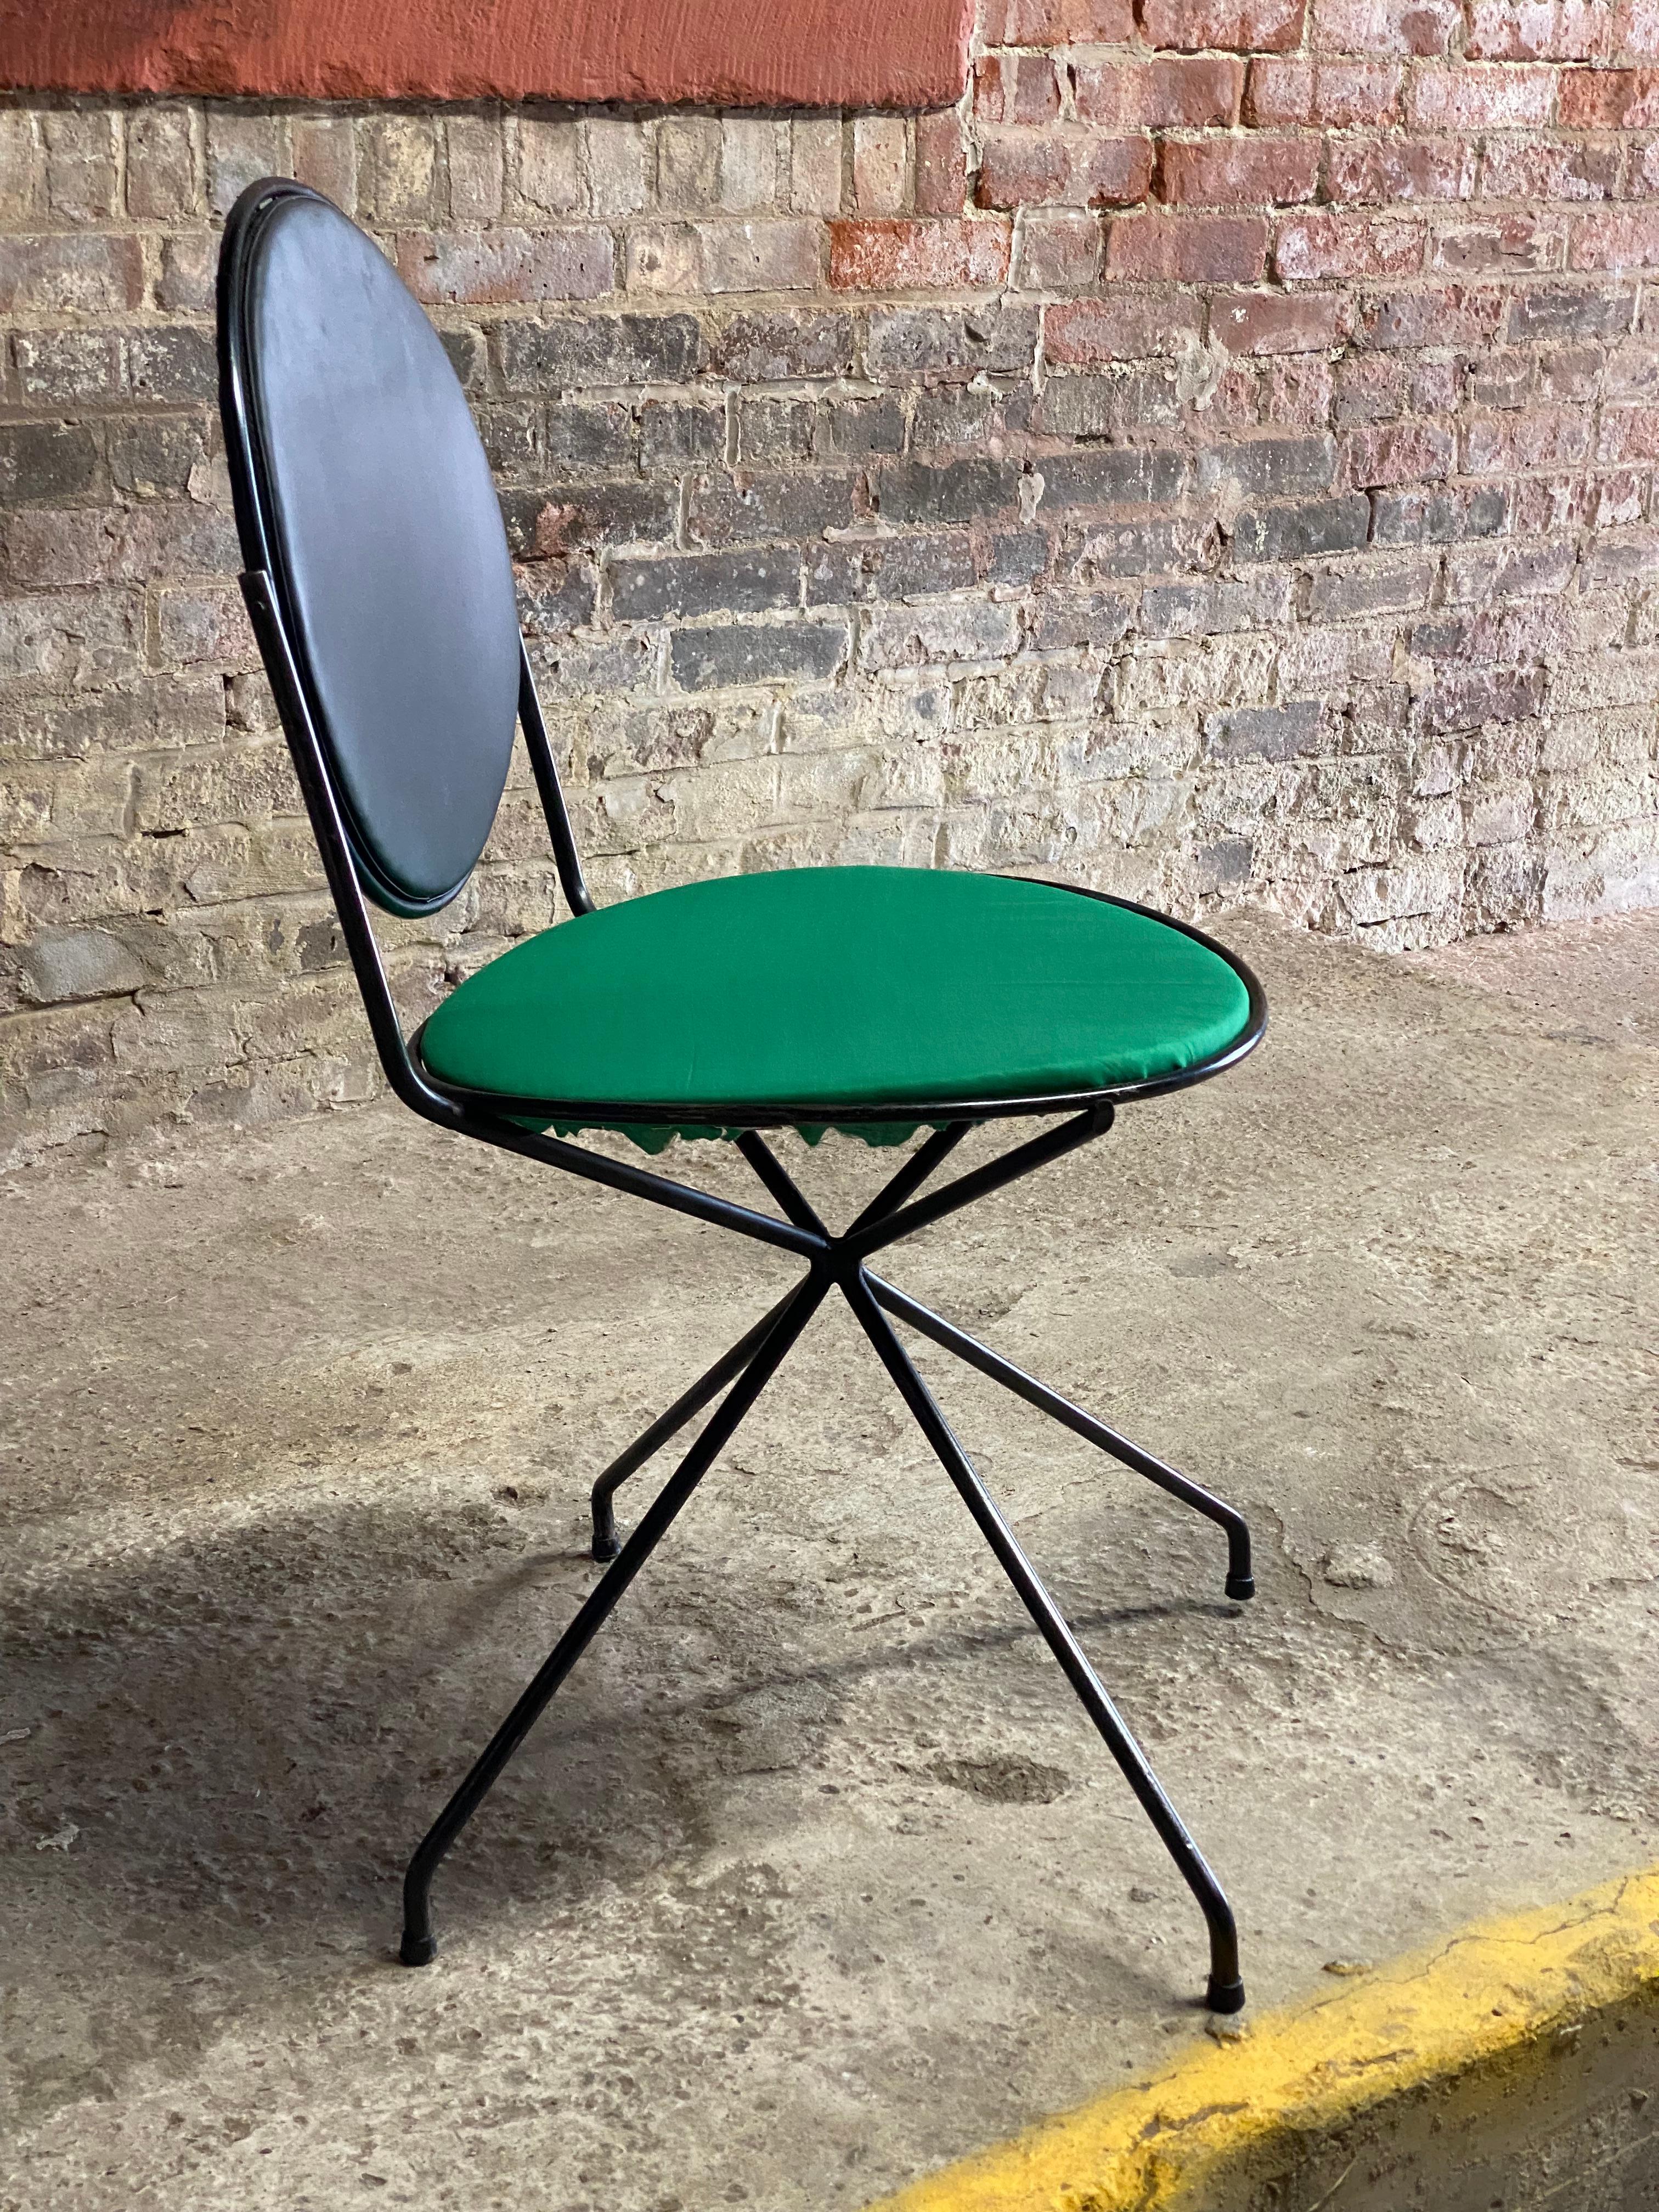 Tony Paul a conçu une chaise à dossier basculant avec un cadre en métal. Cadre en métal noir avec dossier en maille métallique et rembourré dans son vinyle noir d'origine et une assise en tissu vert kelly rafraîchie. Siège stationnaire avec dossier